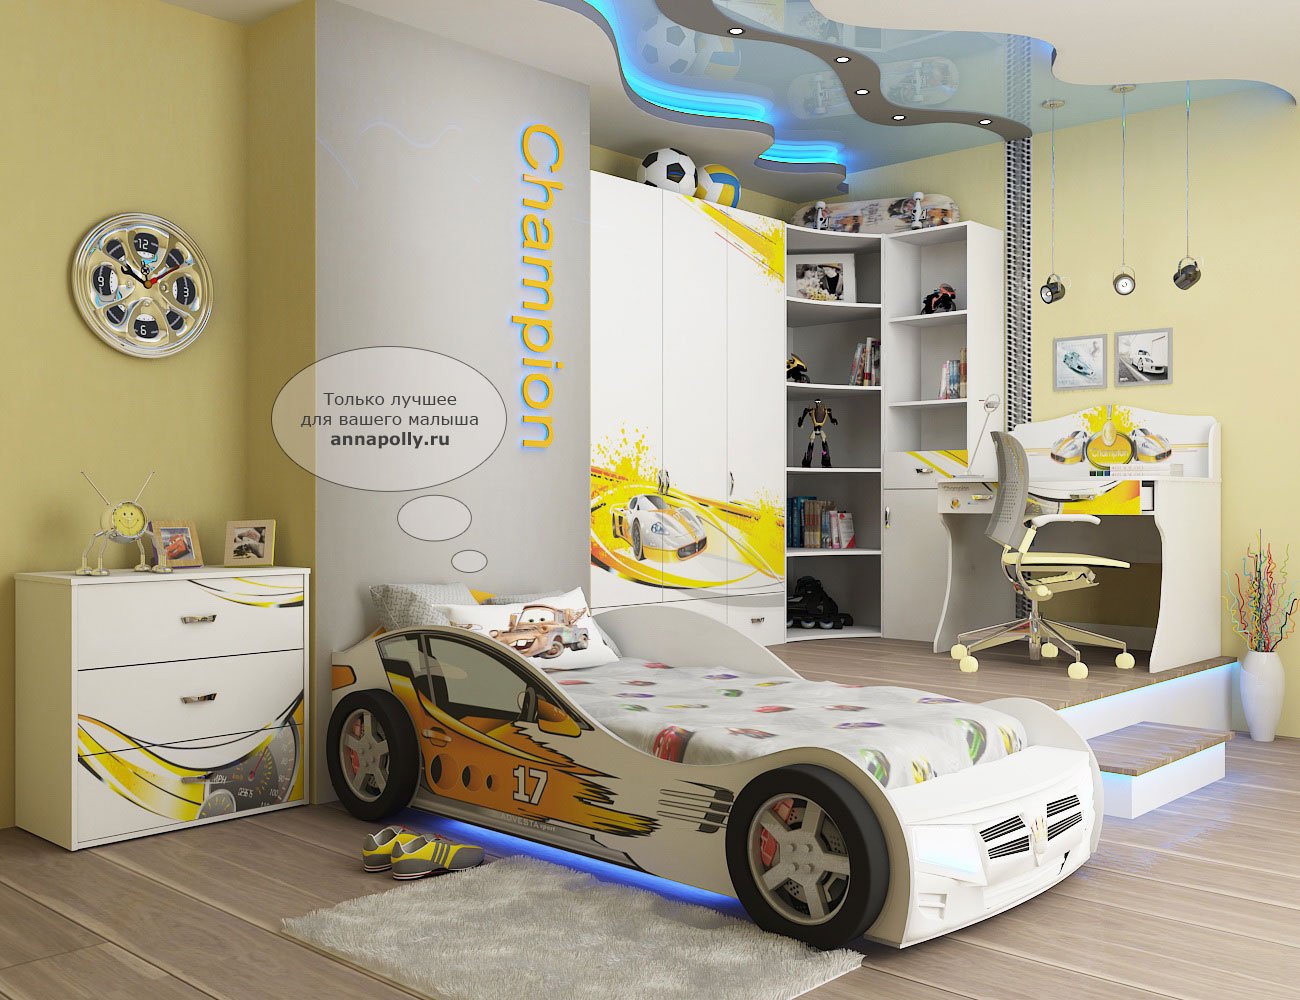 Детская комната с кроватью машиной (34 фото)